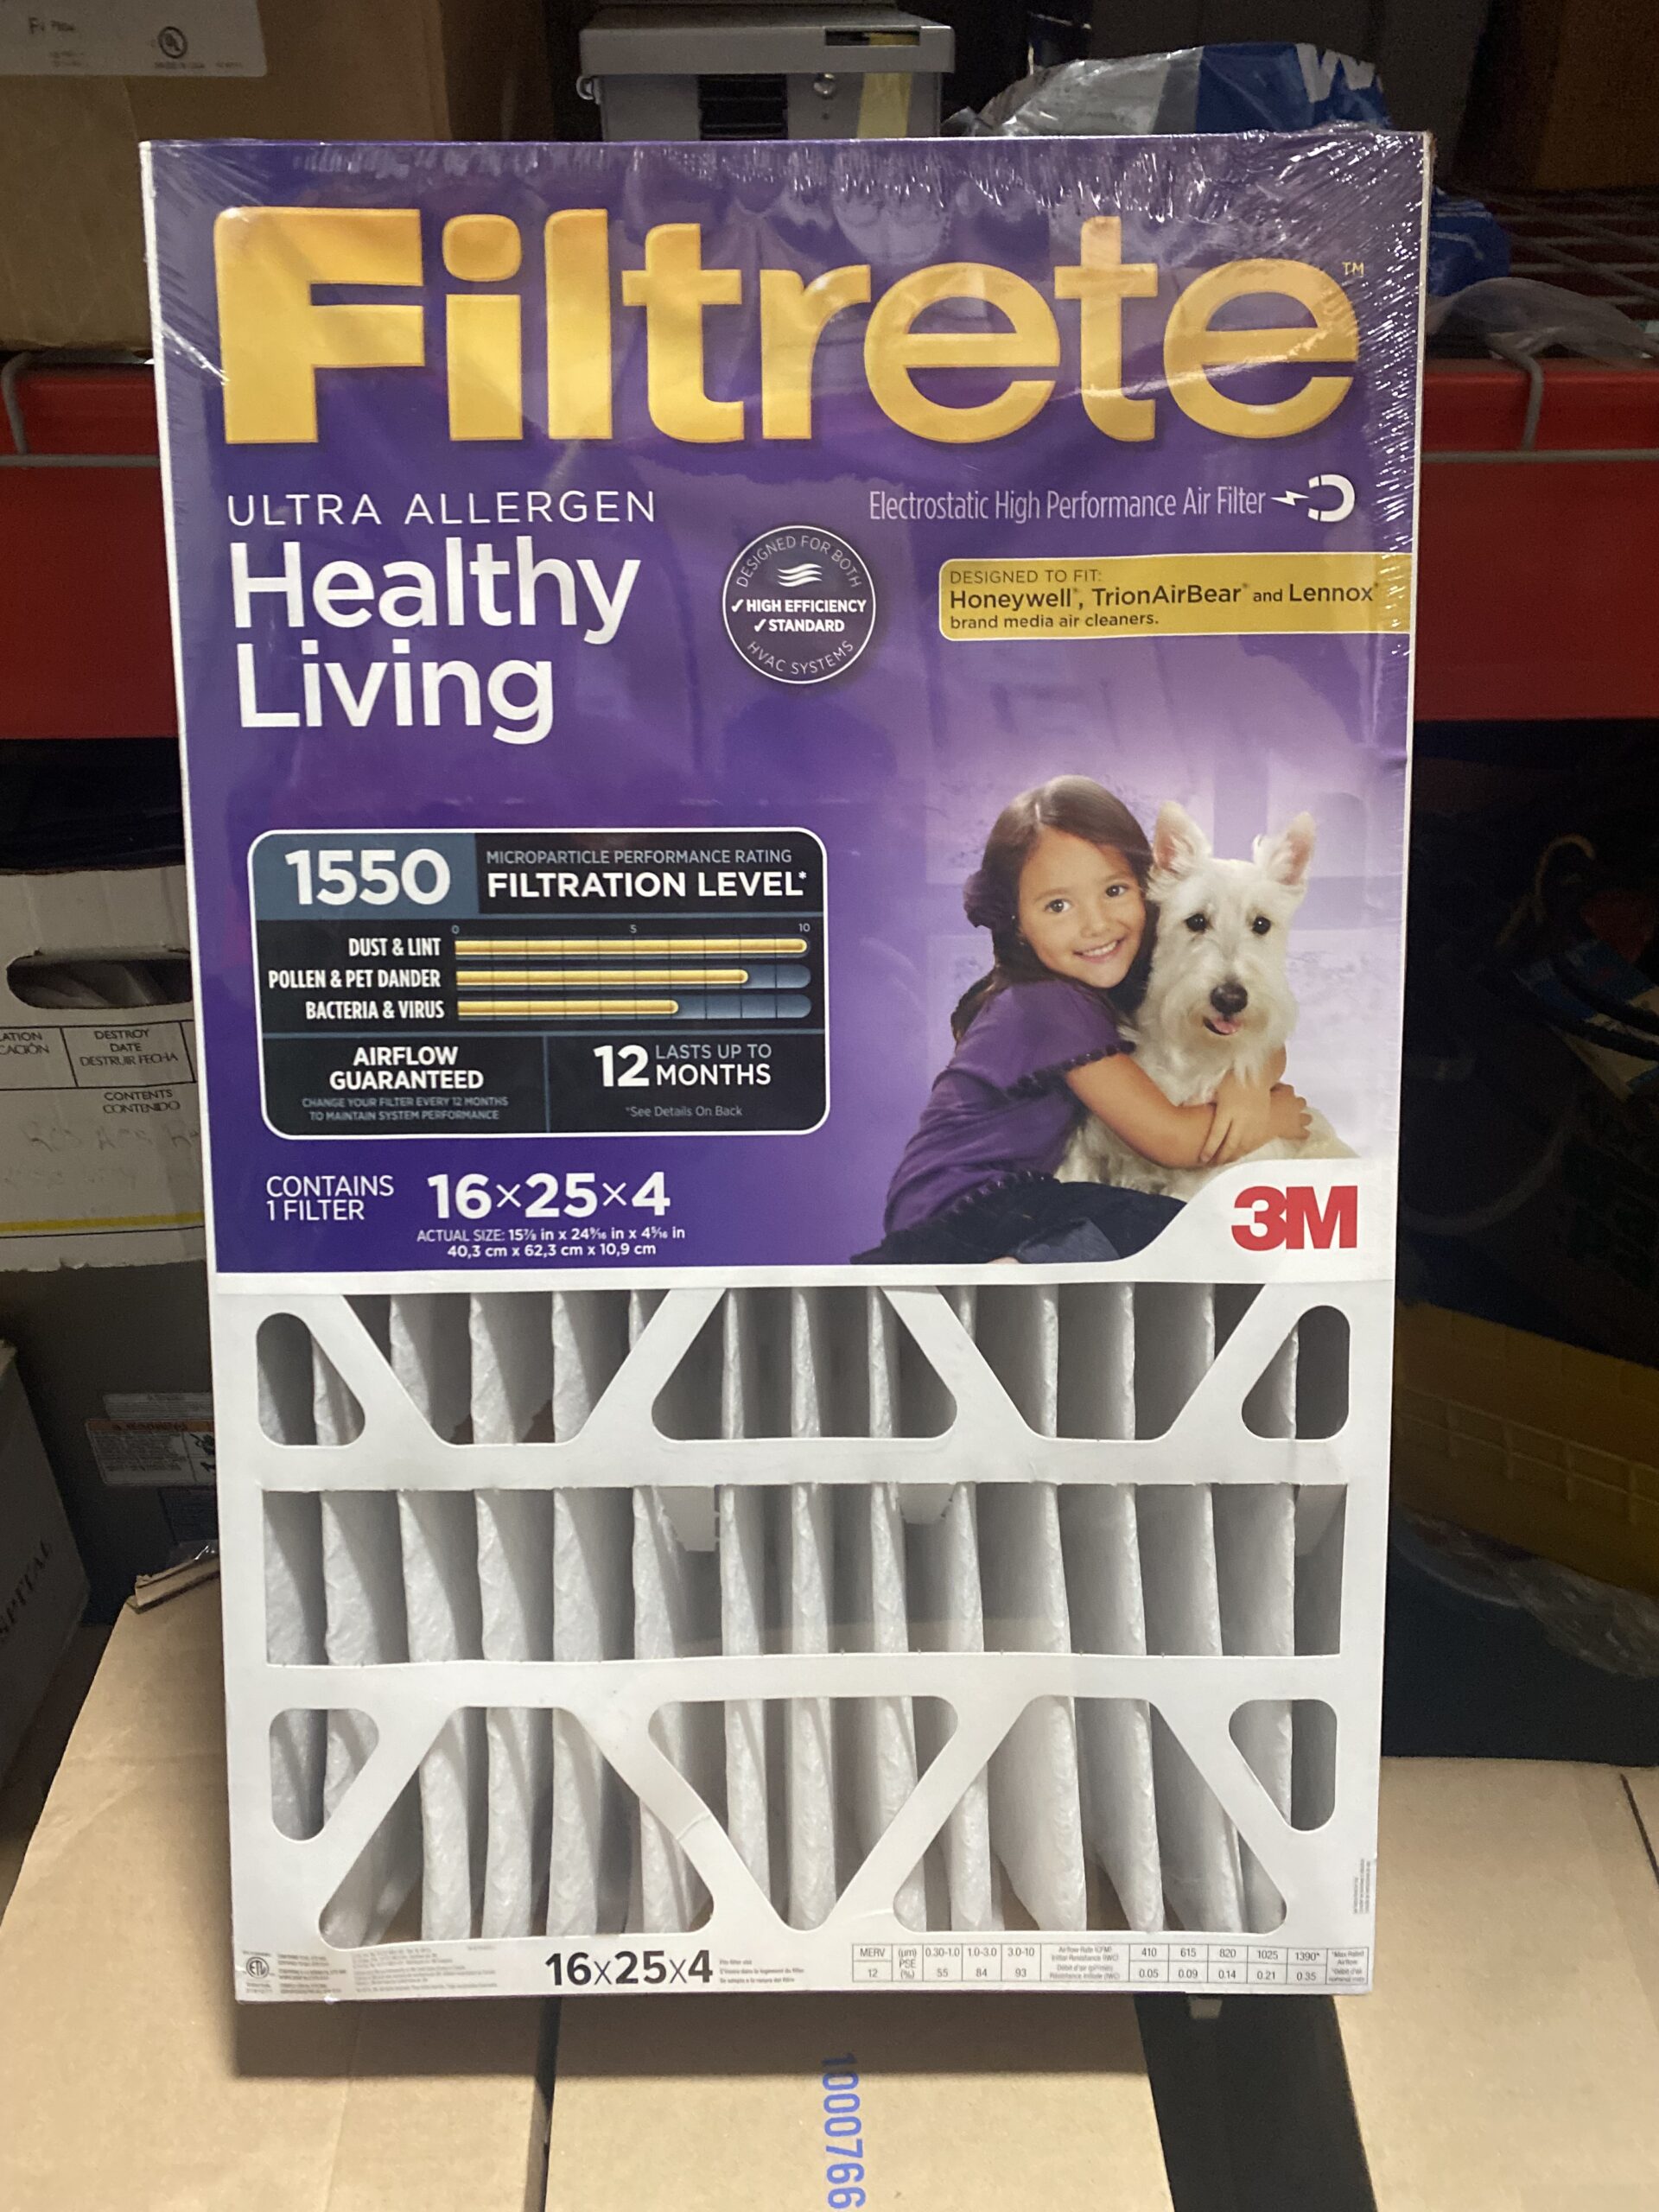 Item HG29 - Filtrete 1550 Healthy Living Furnace Filter valued at $35